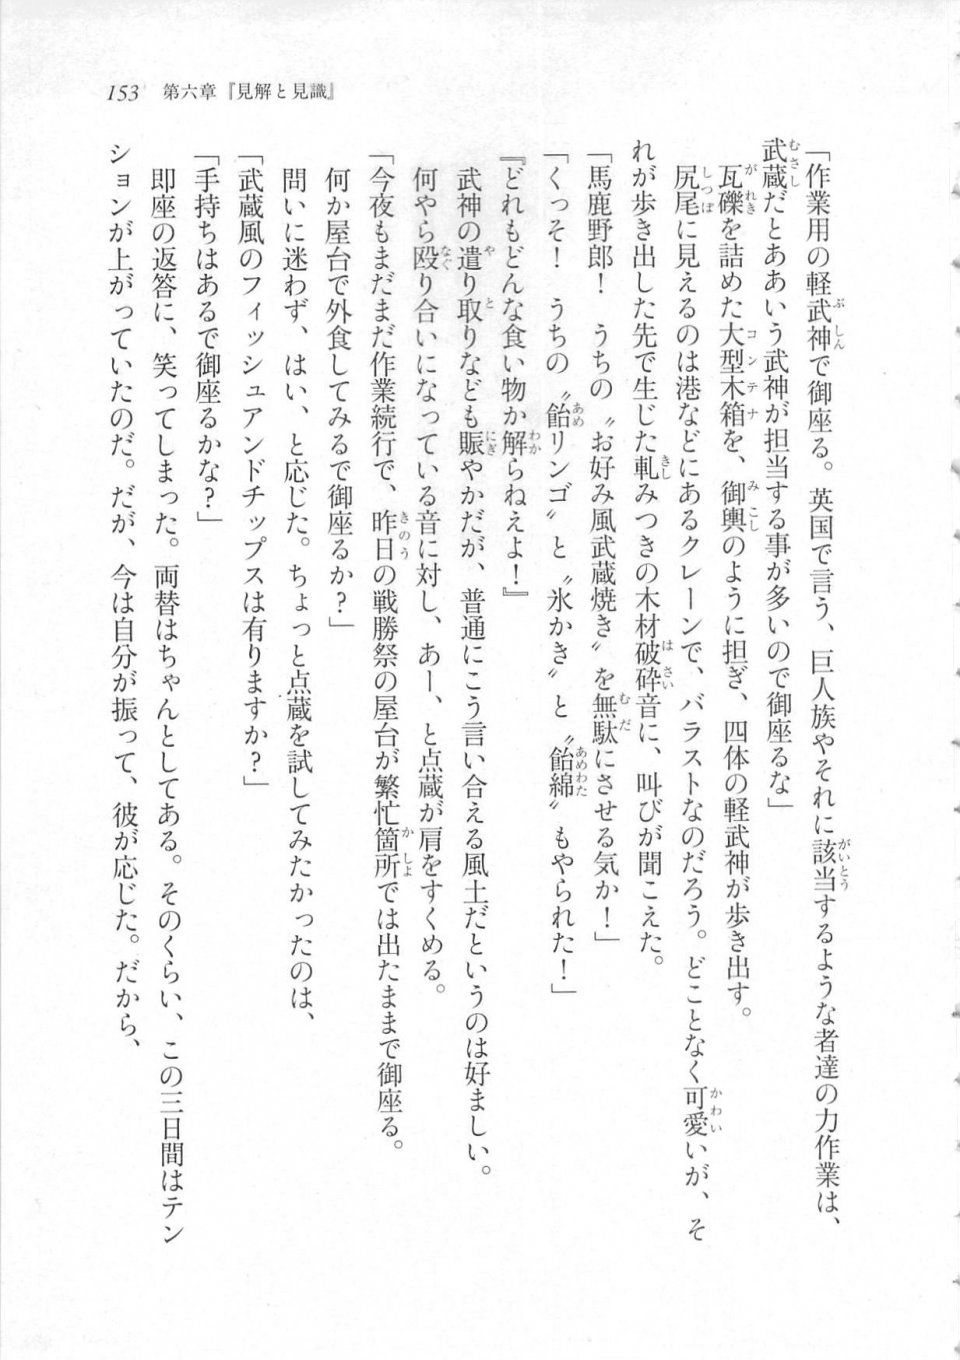 Kyoukai Senjou no Horizon LN Sidestory Vol 3 - Photo #157